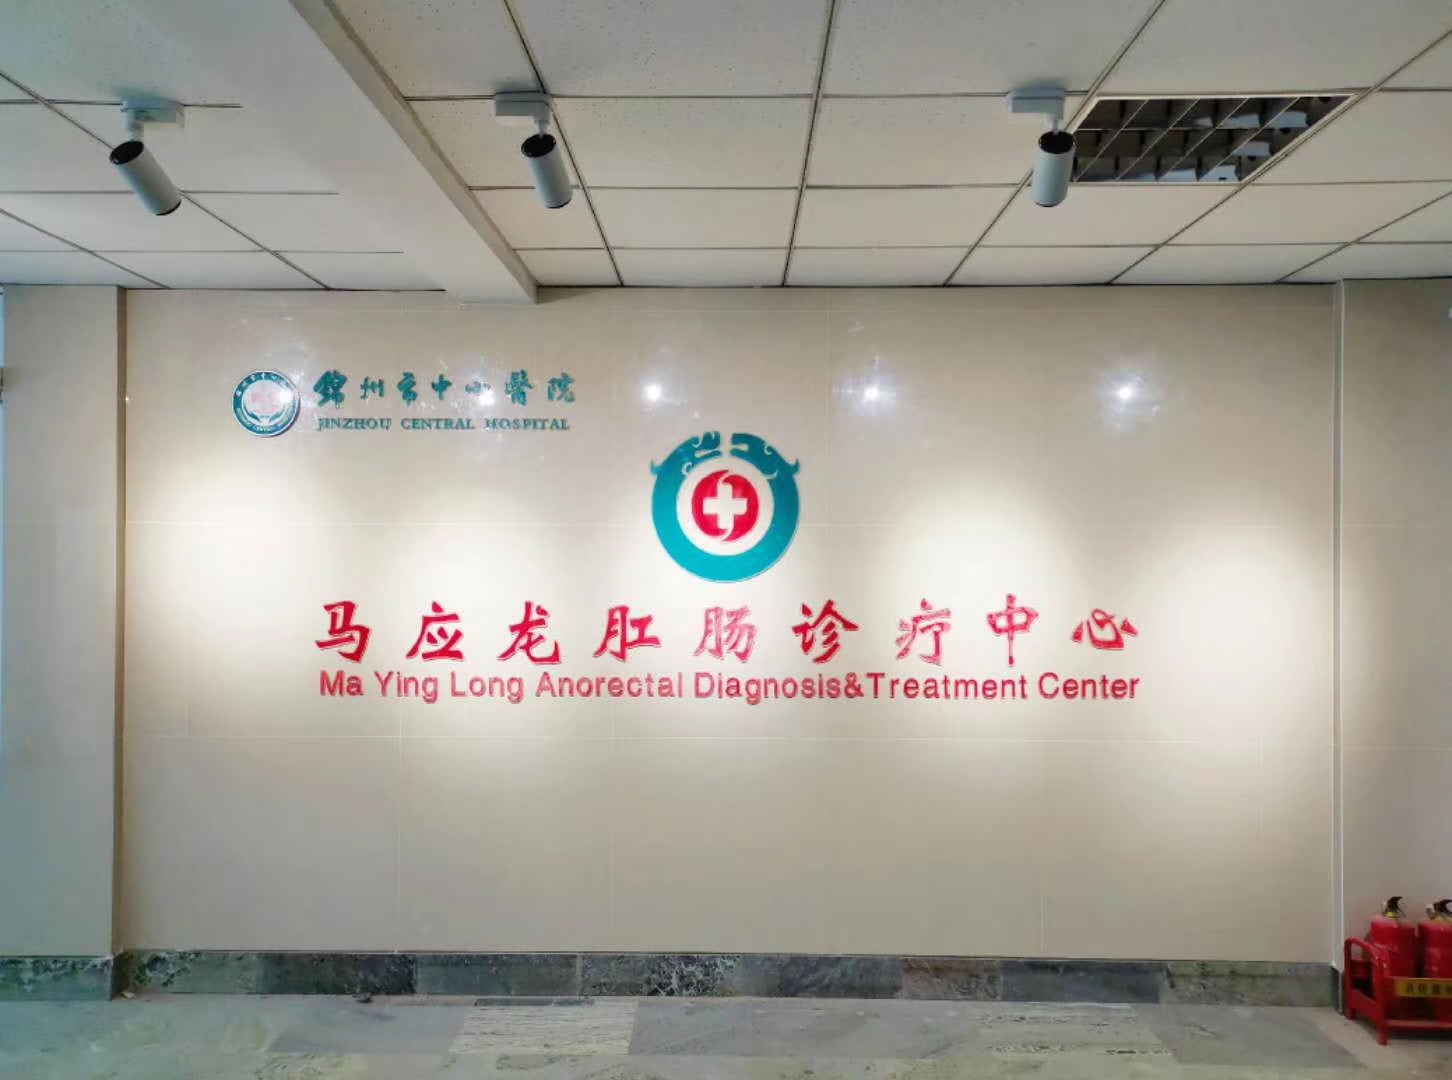 锦州市中心医院马应龙肛肠诊疗中心